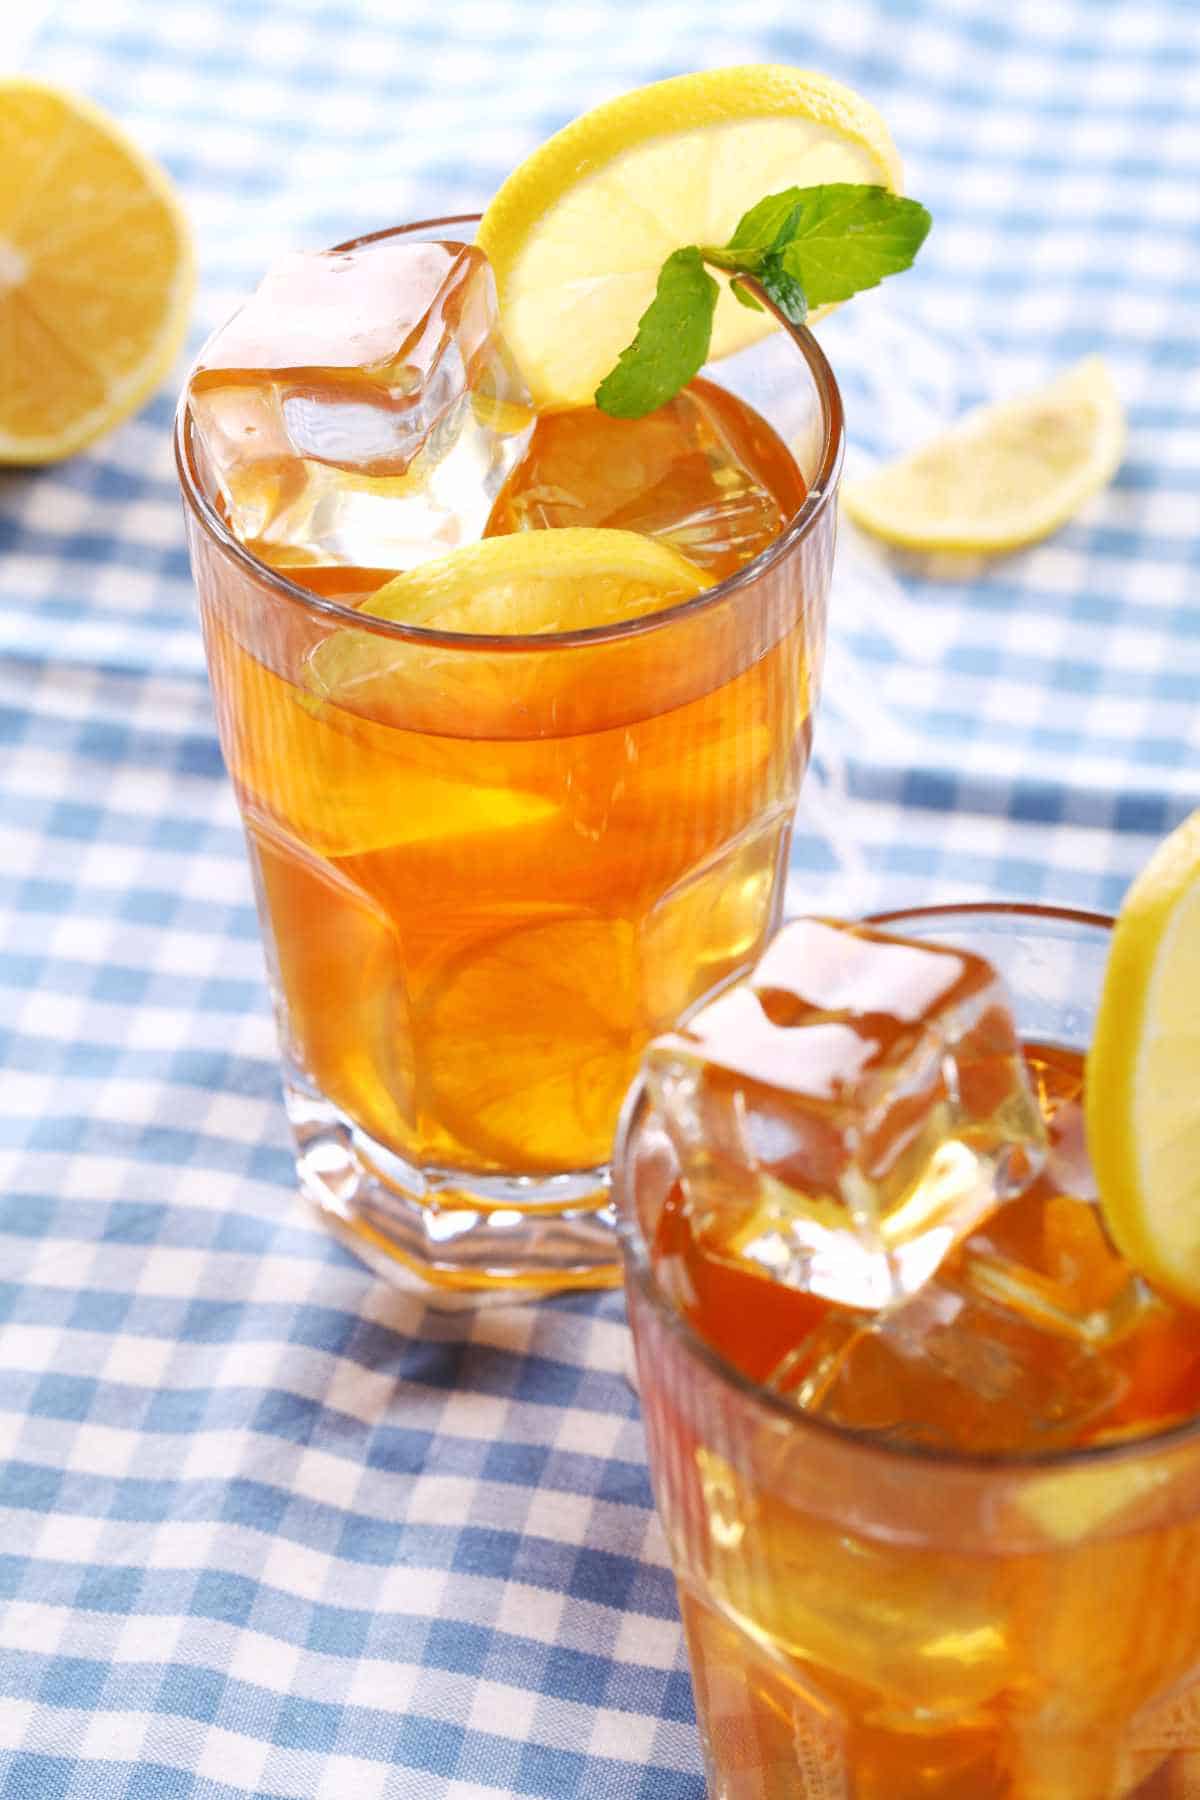 lemon slices on glasses of summer lemonade and iced tea.